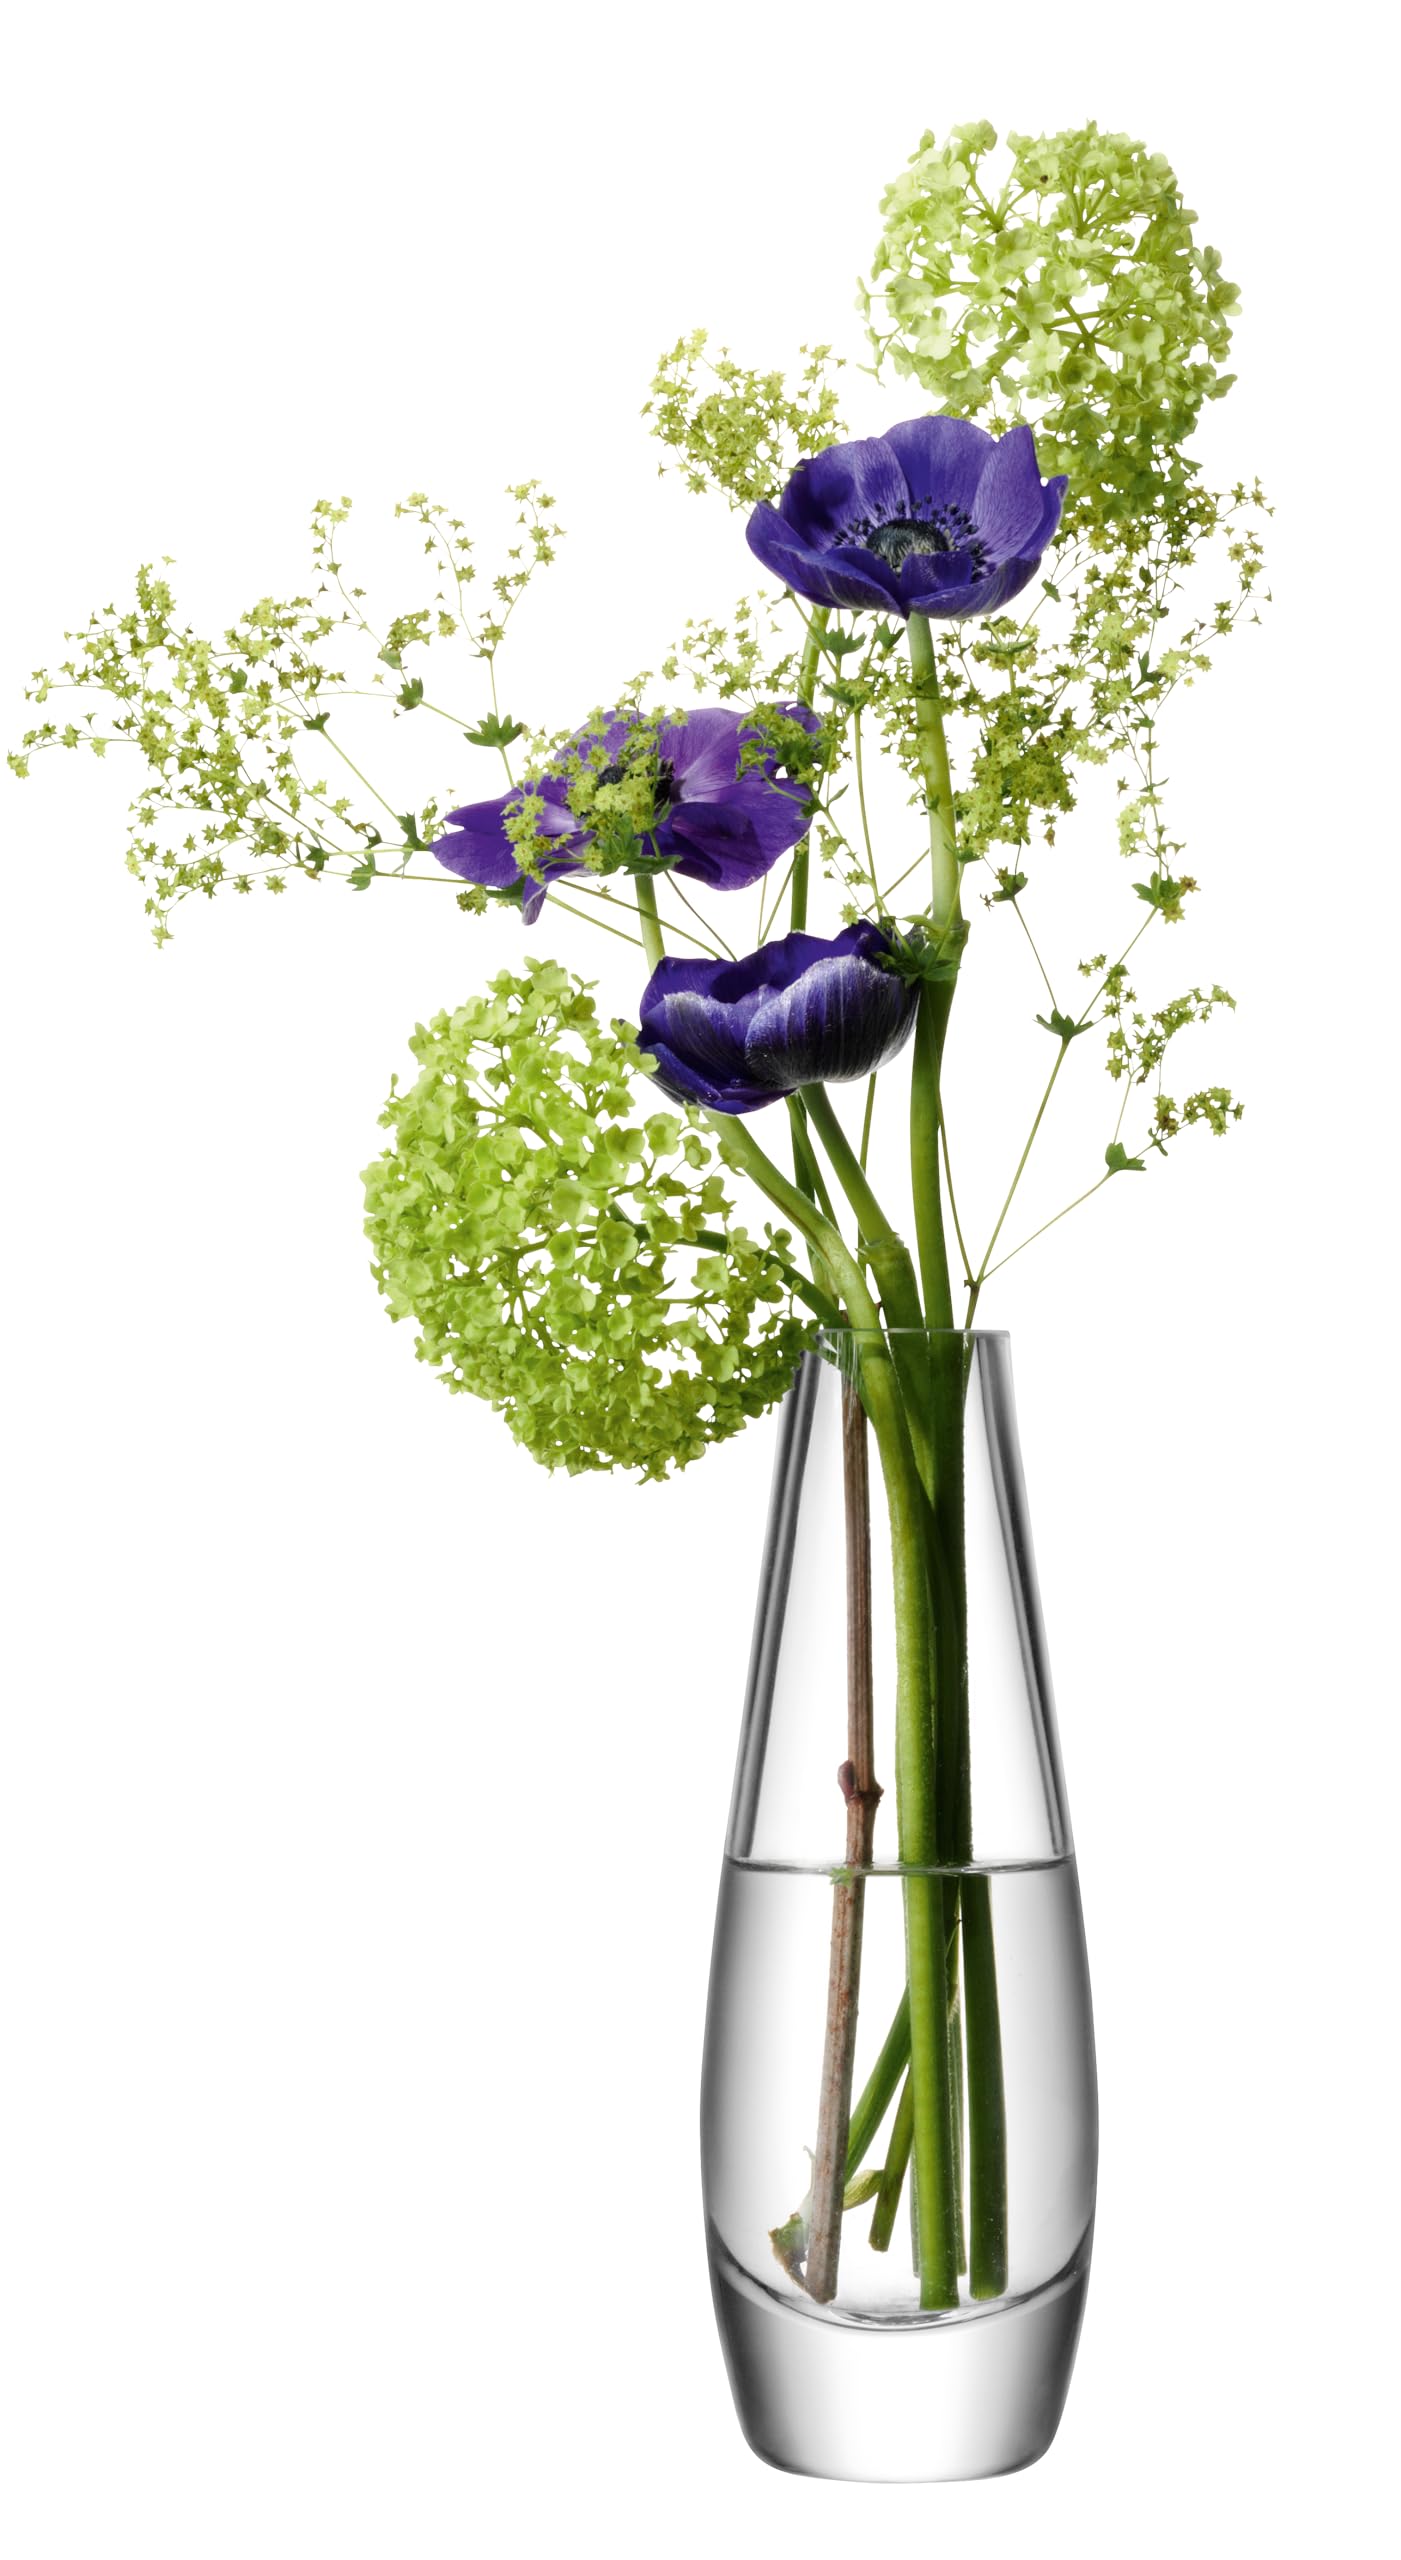 Haute Qualité LSA FW04 Vase soliflore Flower, hauteur 17 cm, transparent kcAiyk0aX stylé 